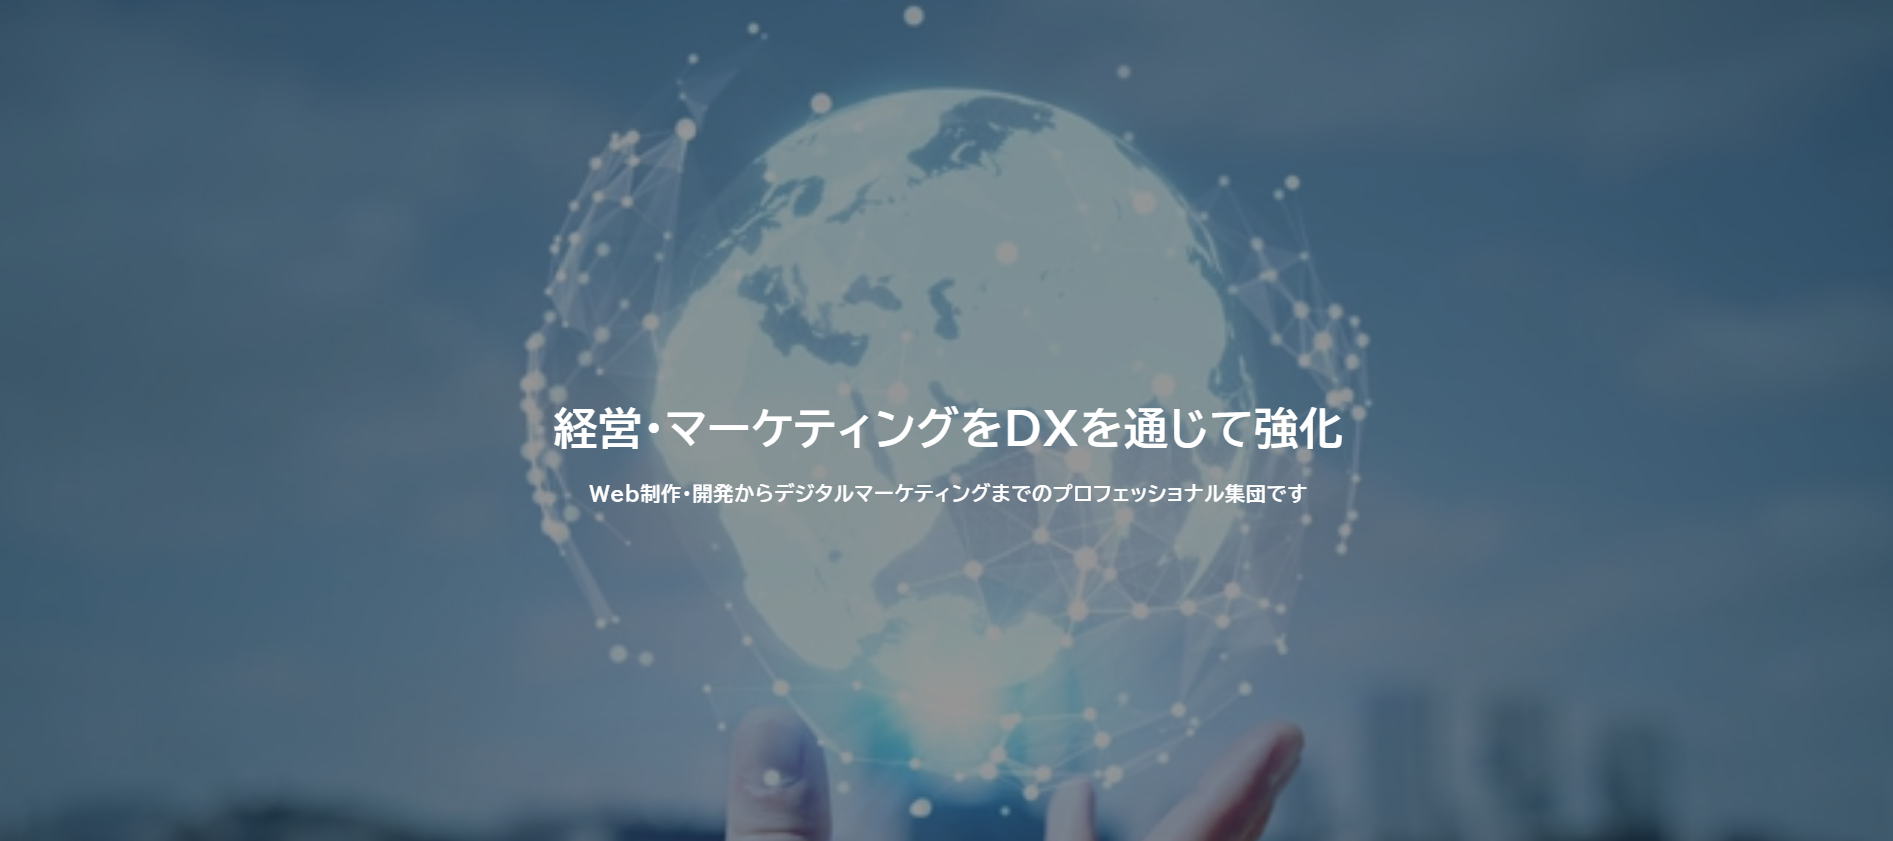 UDX株式会社のUDX株式会社:商品撮影サービス